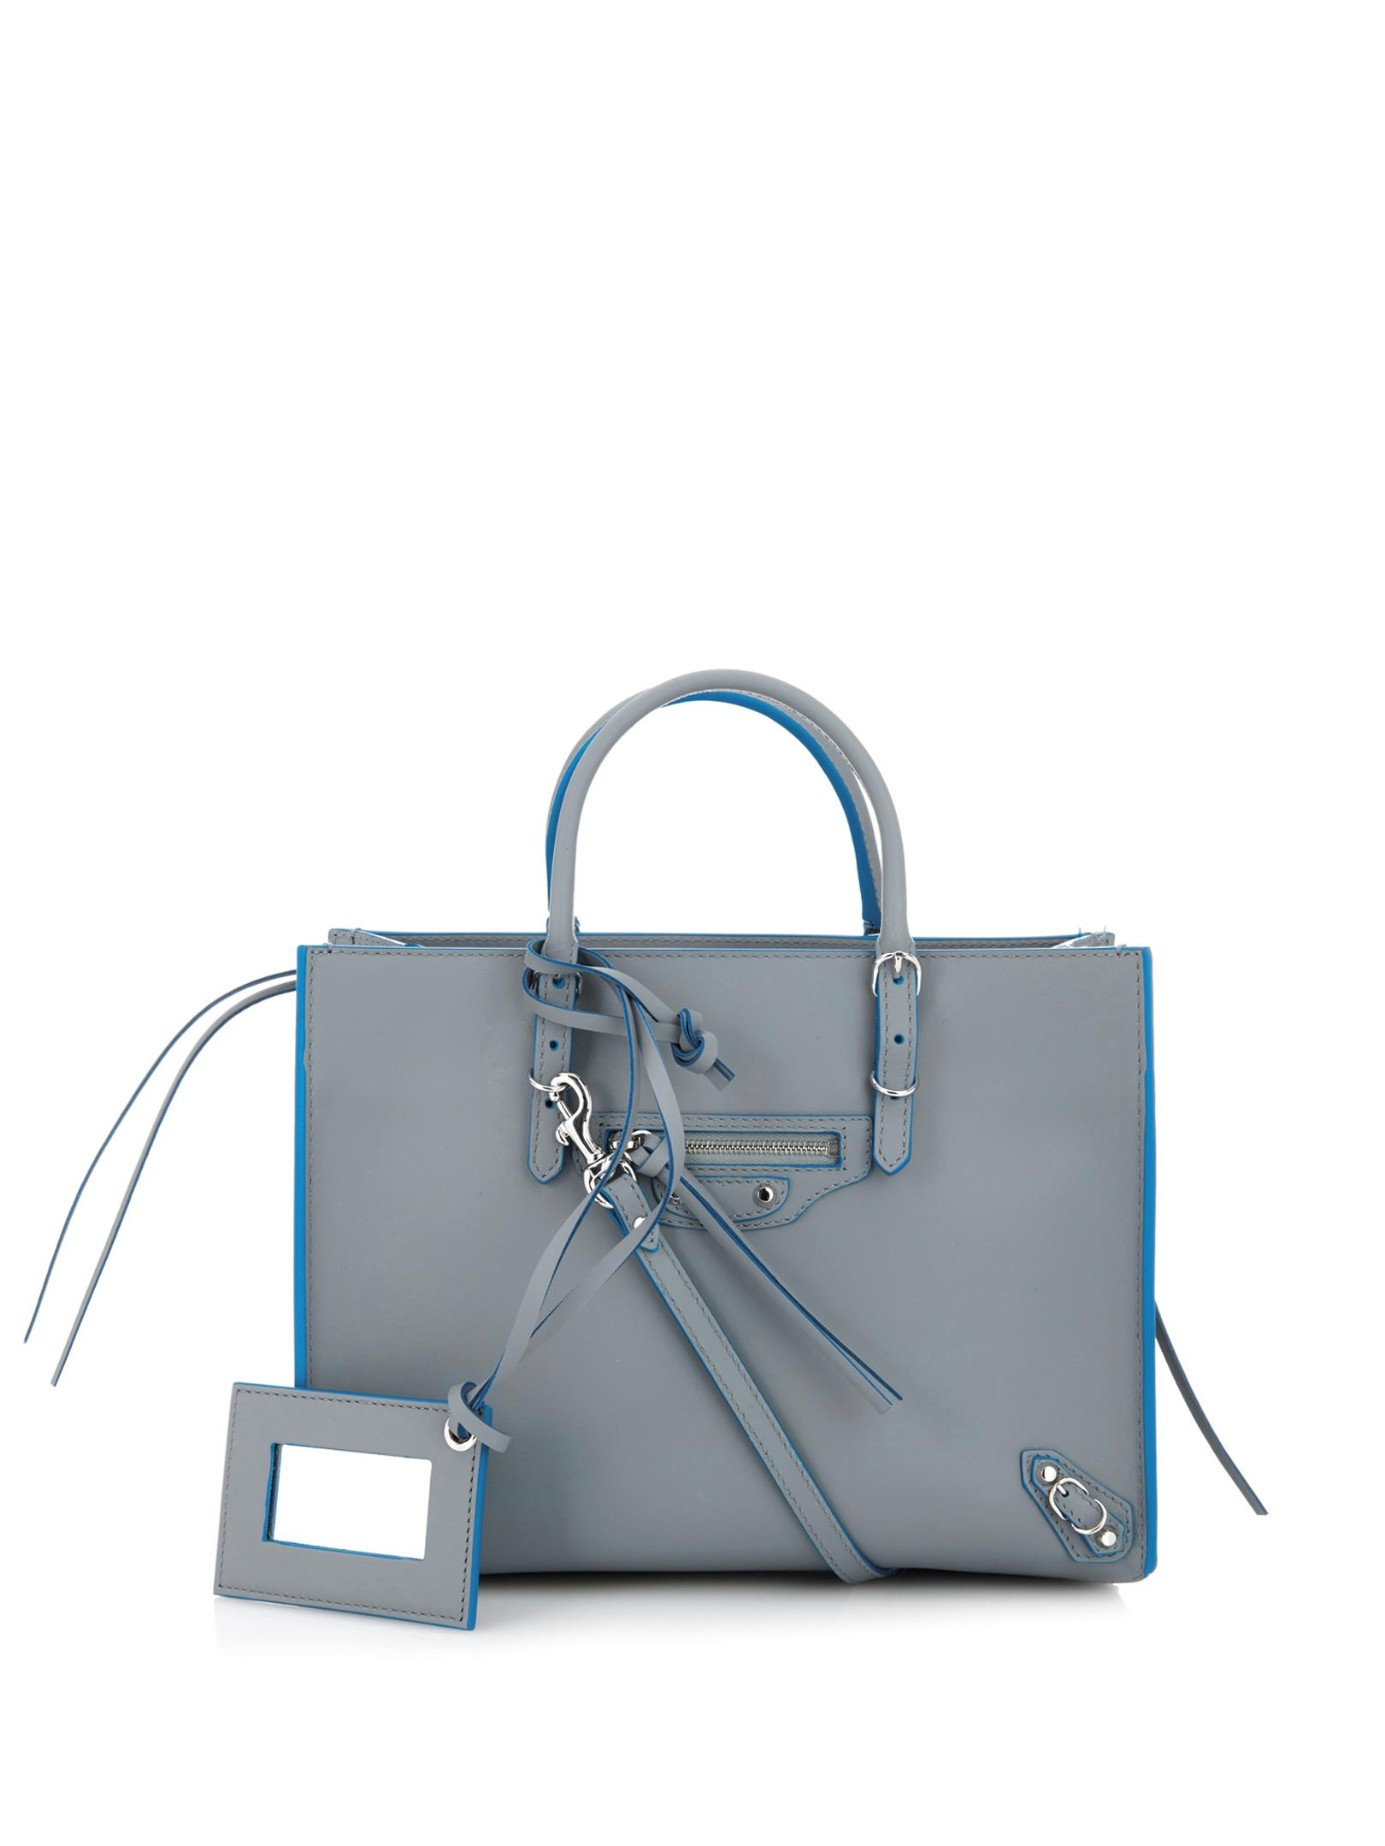 Balenciaga Women's Gray Papier A6 Zip-Around Leather Cross-Body Bag